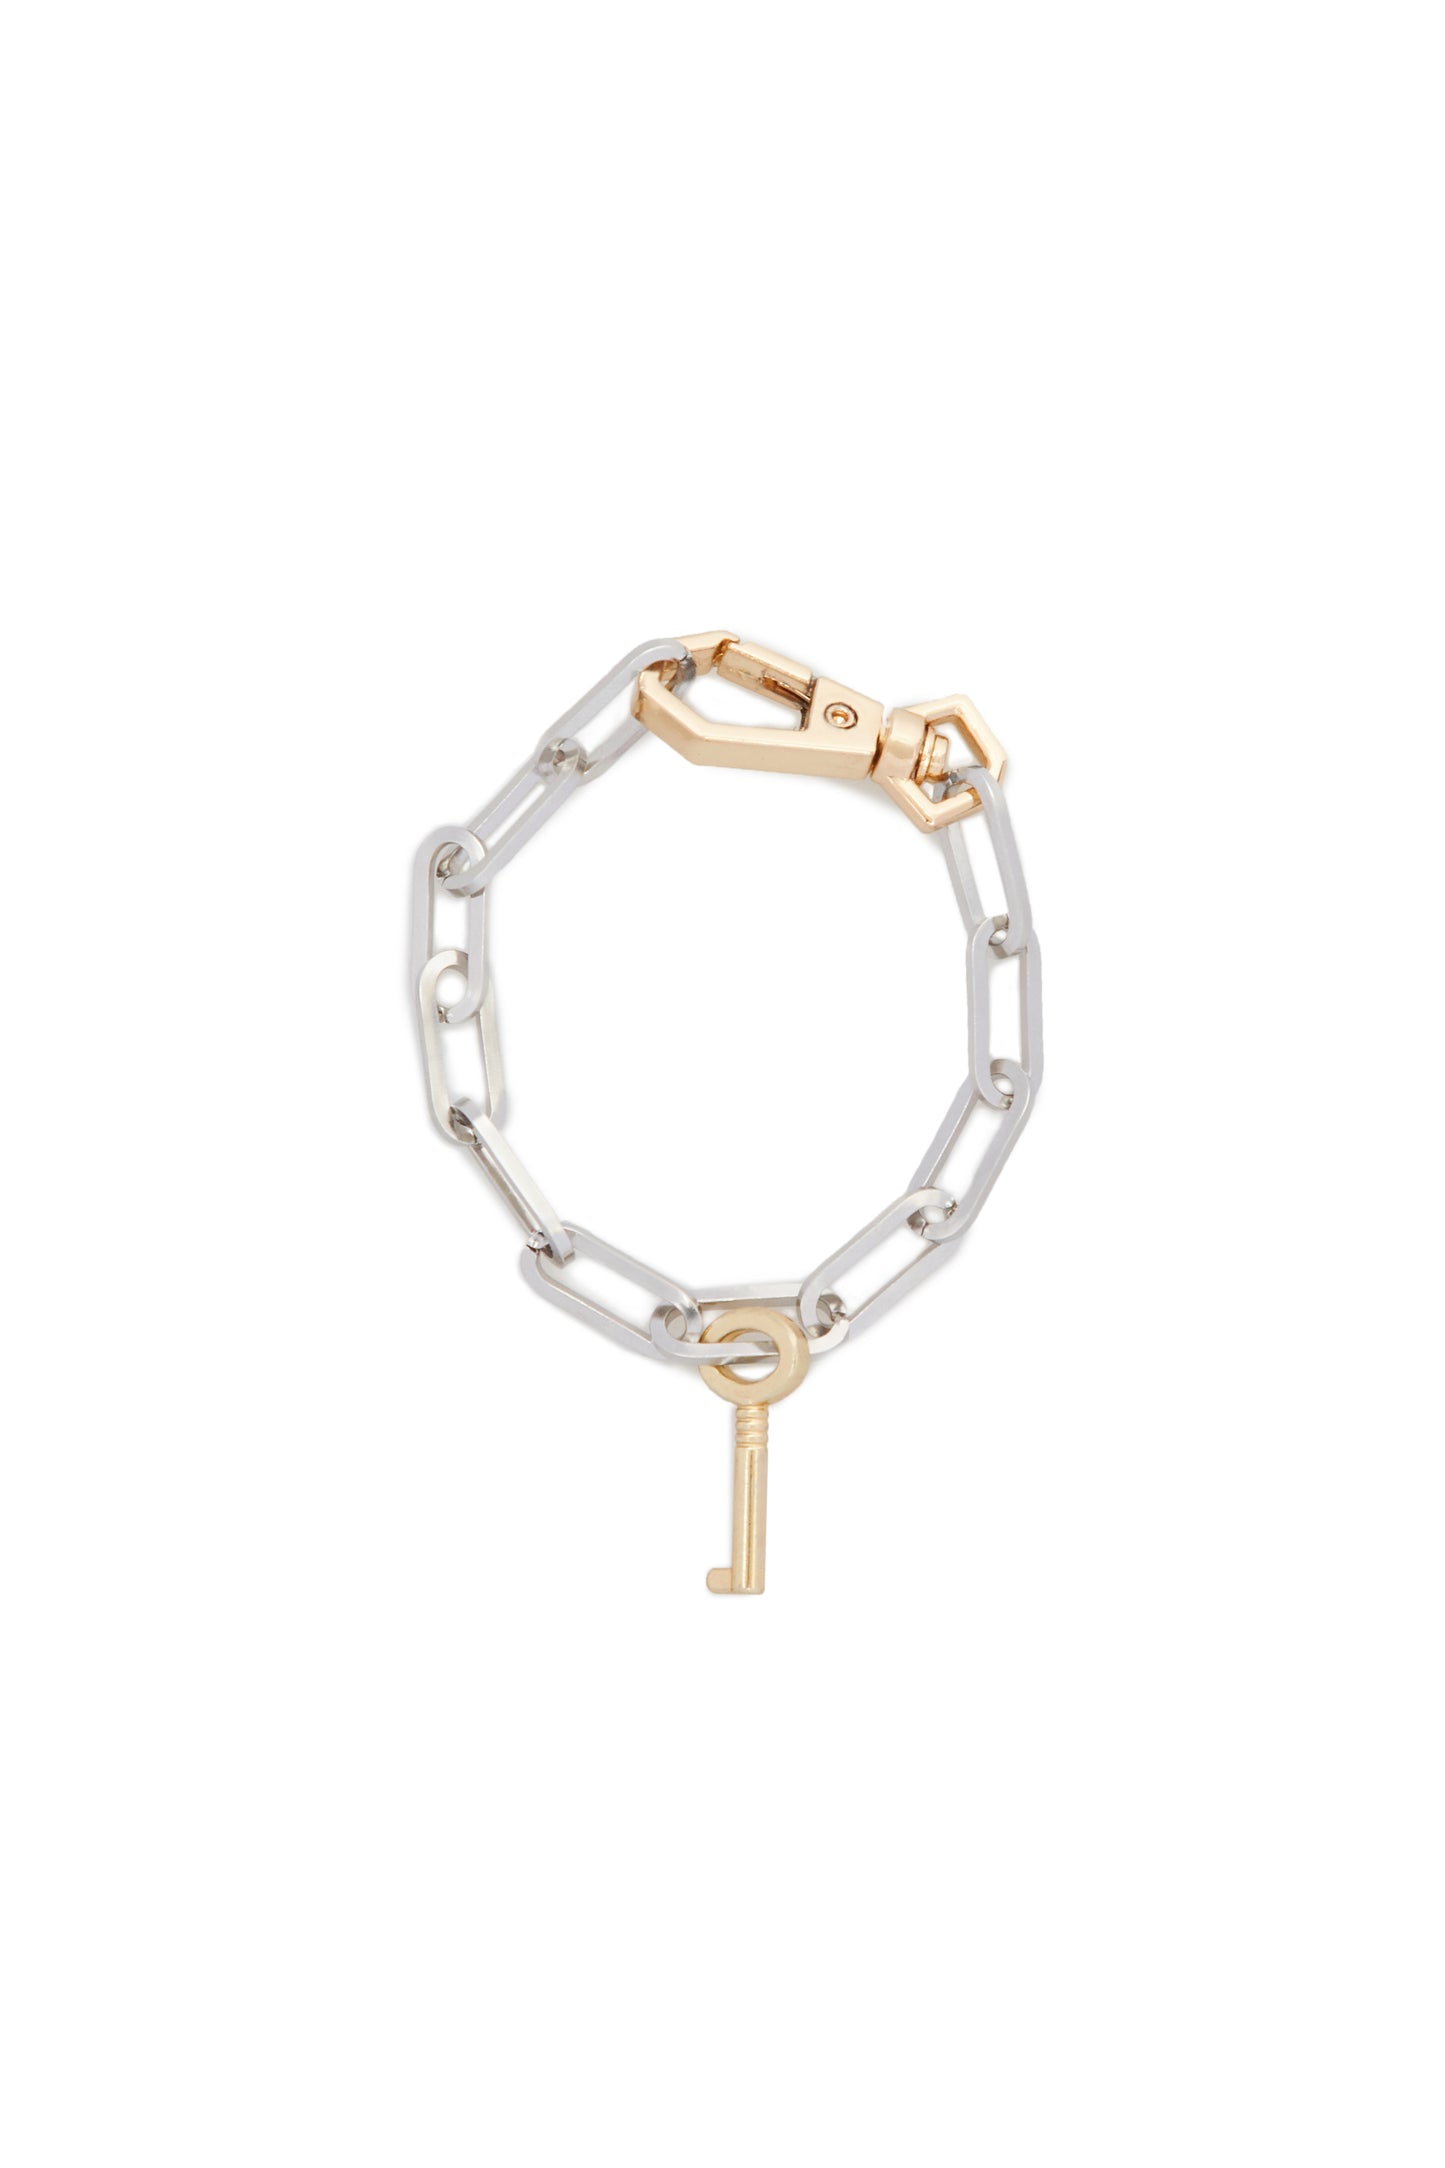 Bracelet with Gold Key